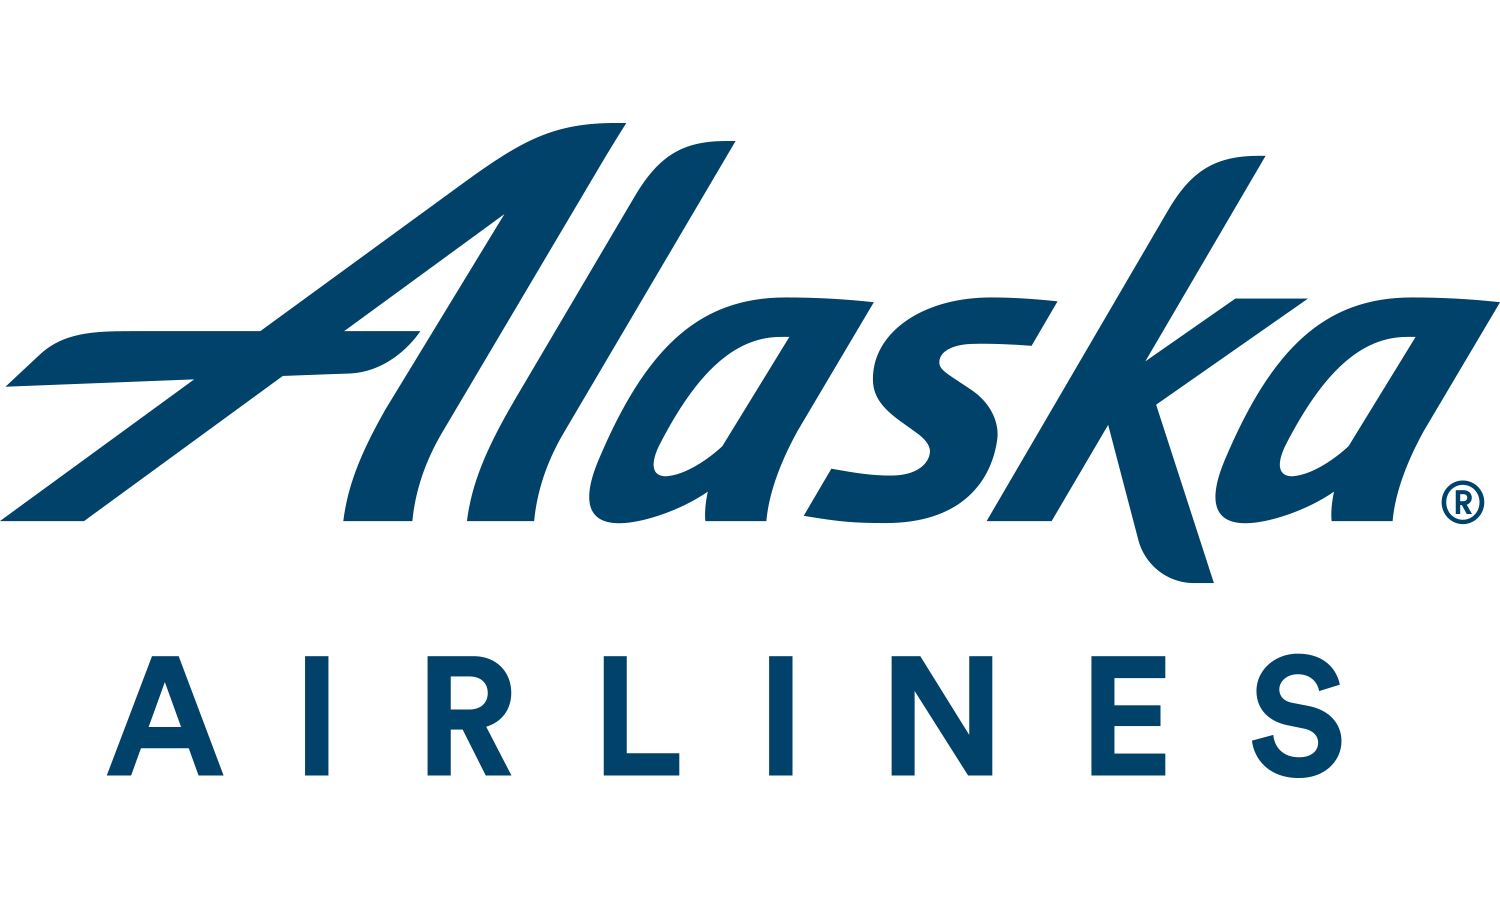 alaska_airlines-logo.png